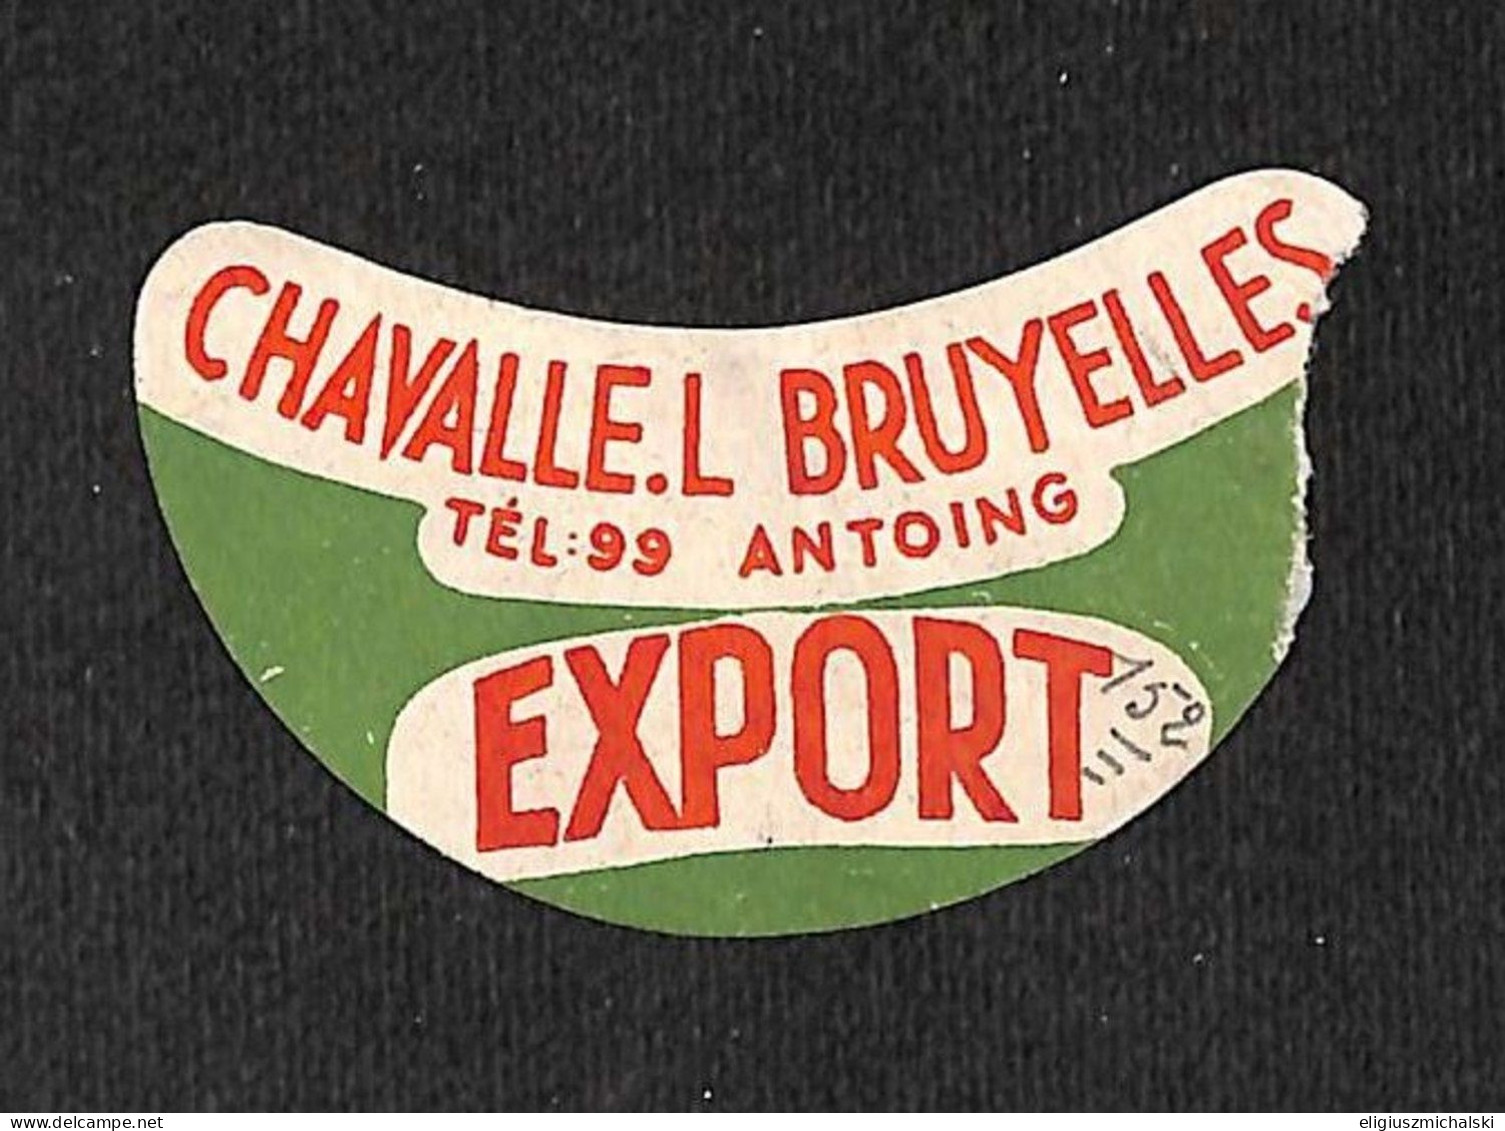 Antoing - Chavalle L. Bruyelles Export Découpe !!! (vente Unique) - Bier